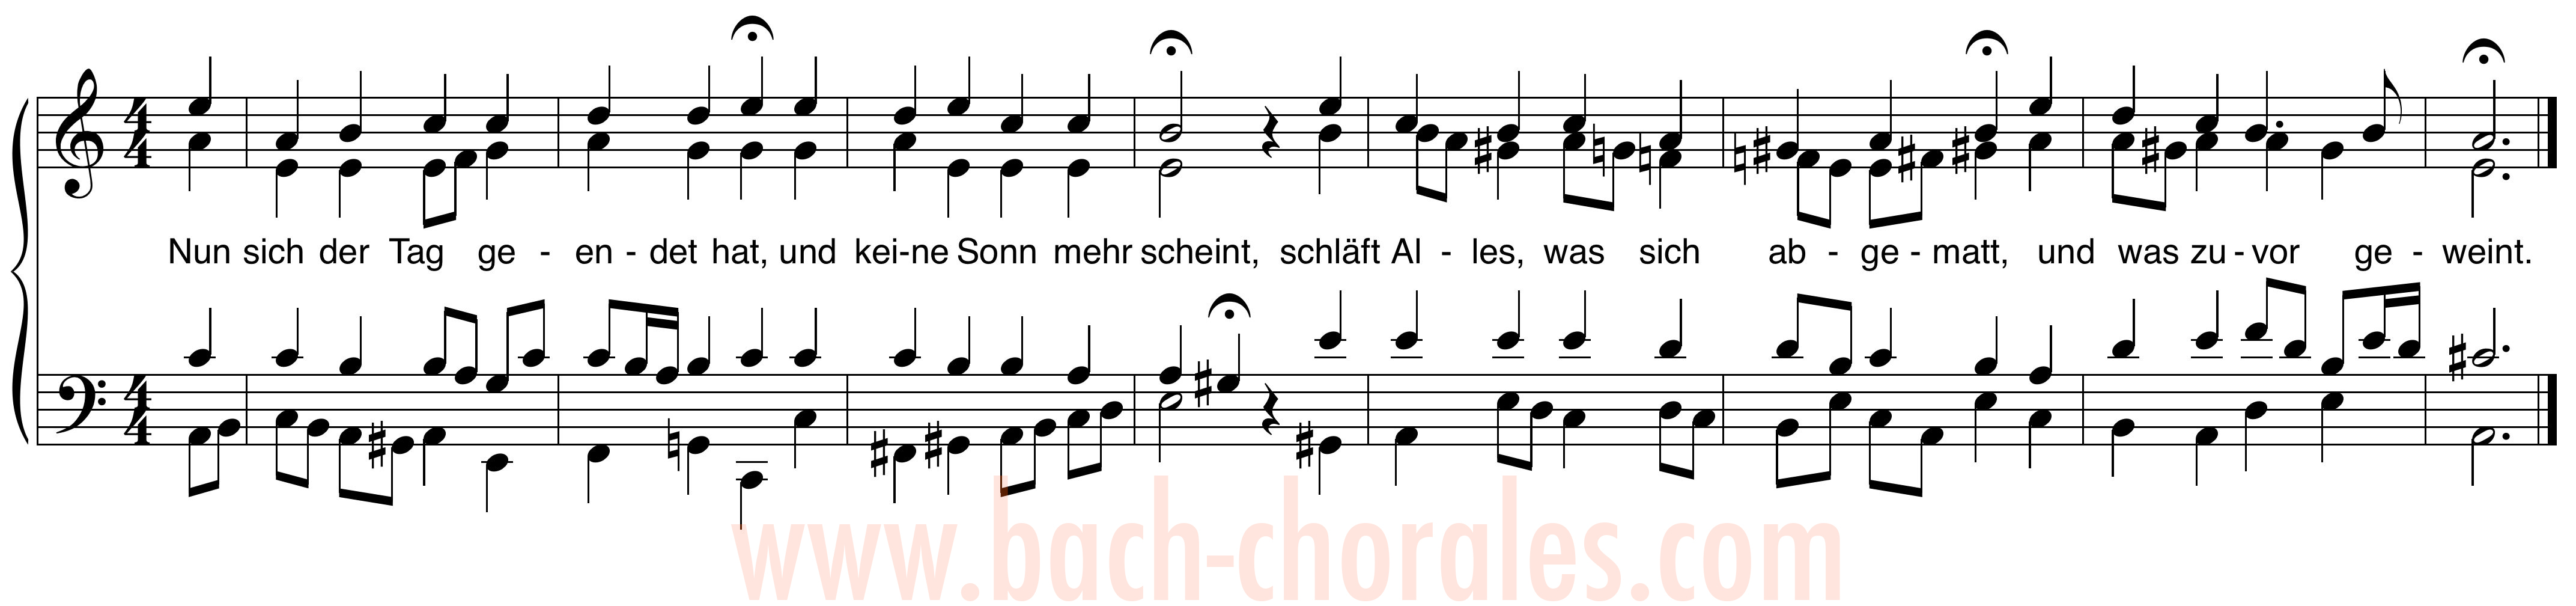 notenbeeld BWV 396 op https://www.bach-chorales.com/